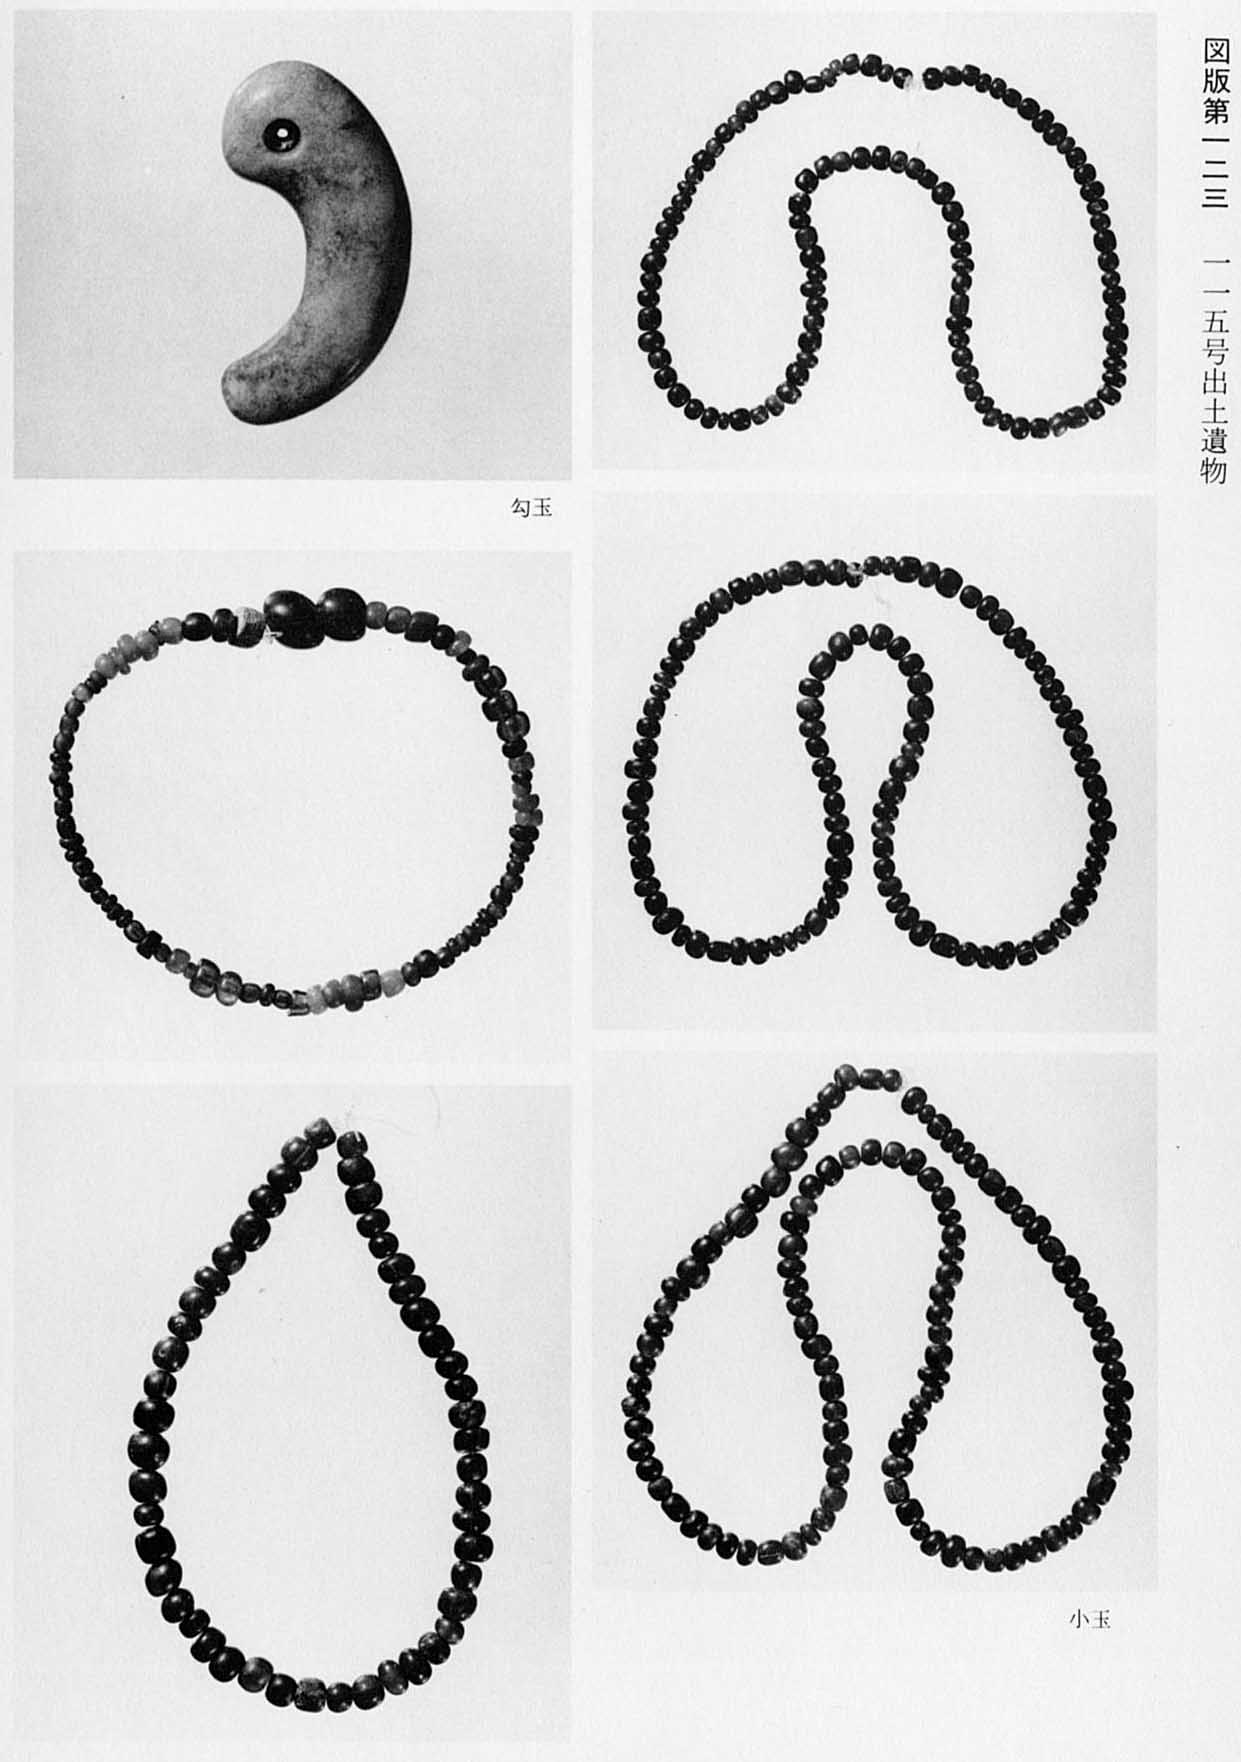 曲がった石の勾玉と、小さい石をつなぎ合わせた5つの小玉がそれぞれ撮影されている、図版123 115号出土遺物のモノクロ写真